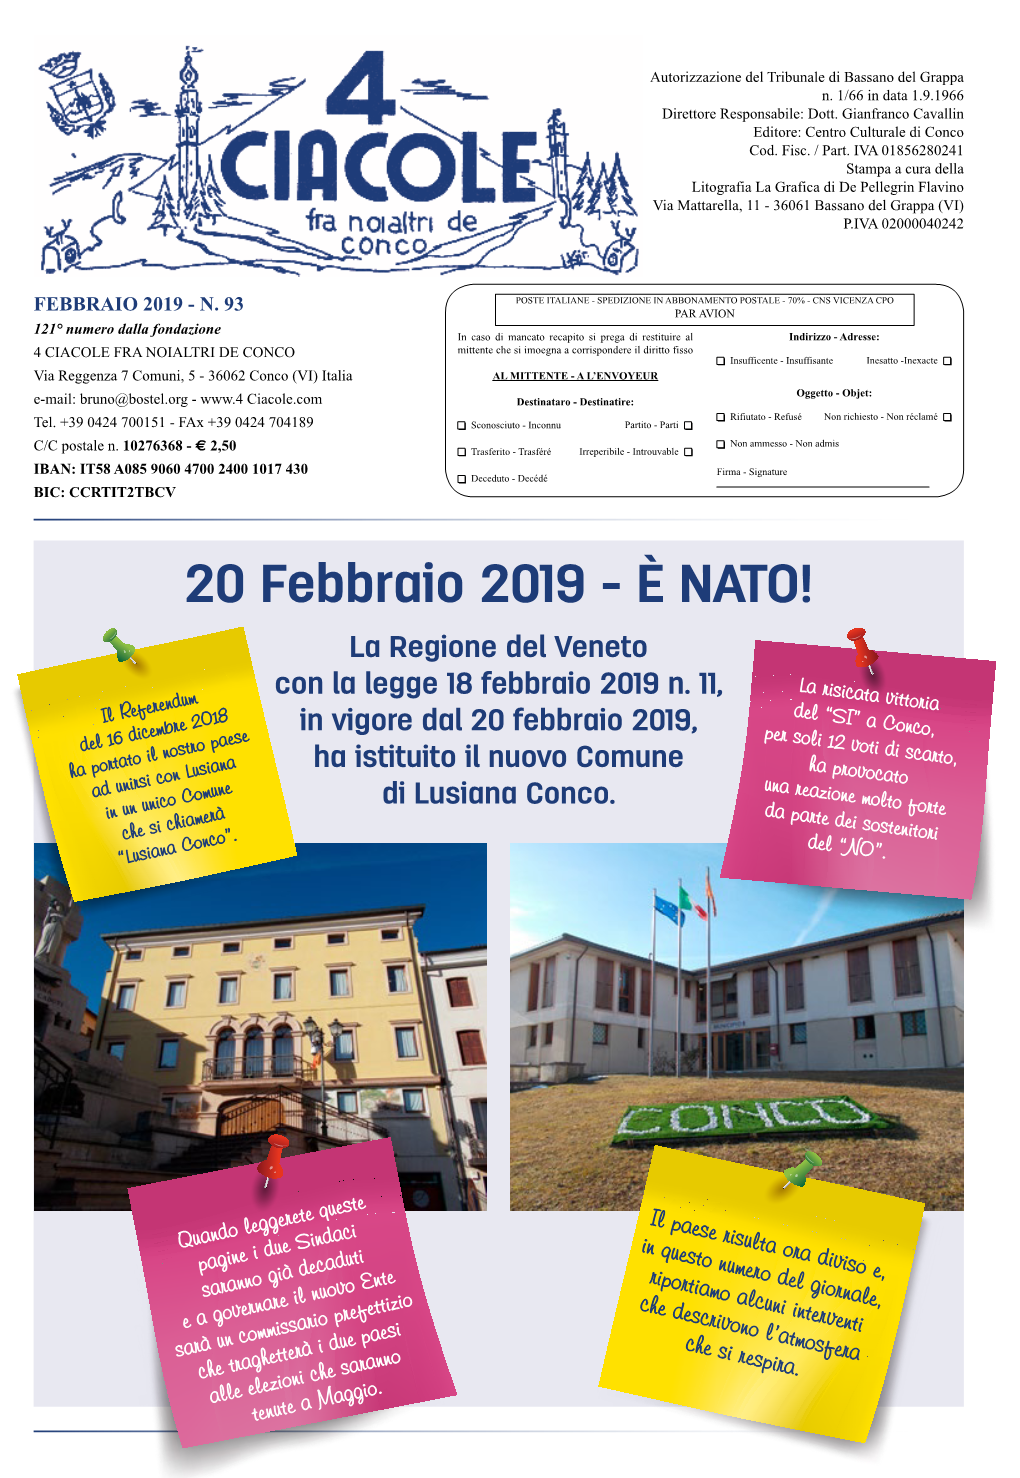 20 Febbraio 2019 - È NATO! La Regione Del Veneto Con La Legge 18 Febbraio 2019 N